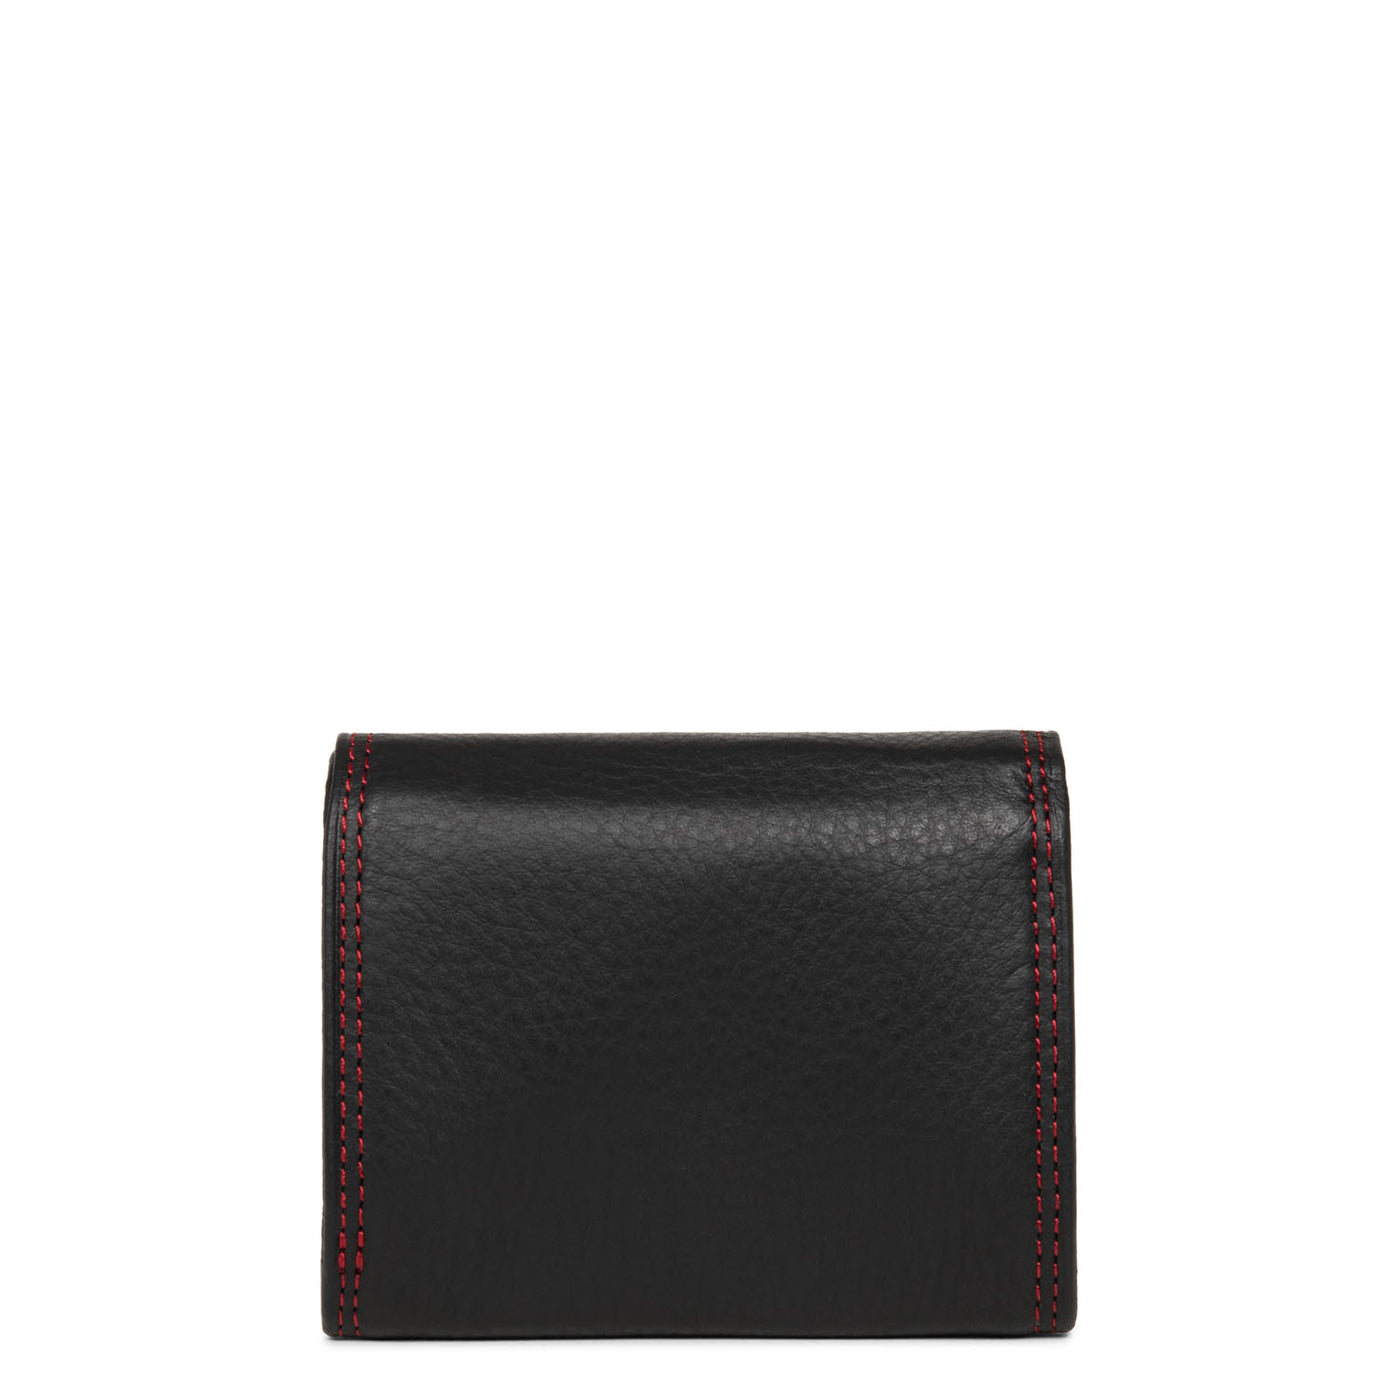 porte-monnaie - soft vintage homme #couleur_noir-rouge